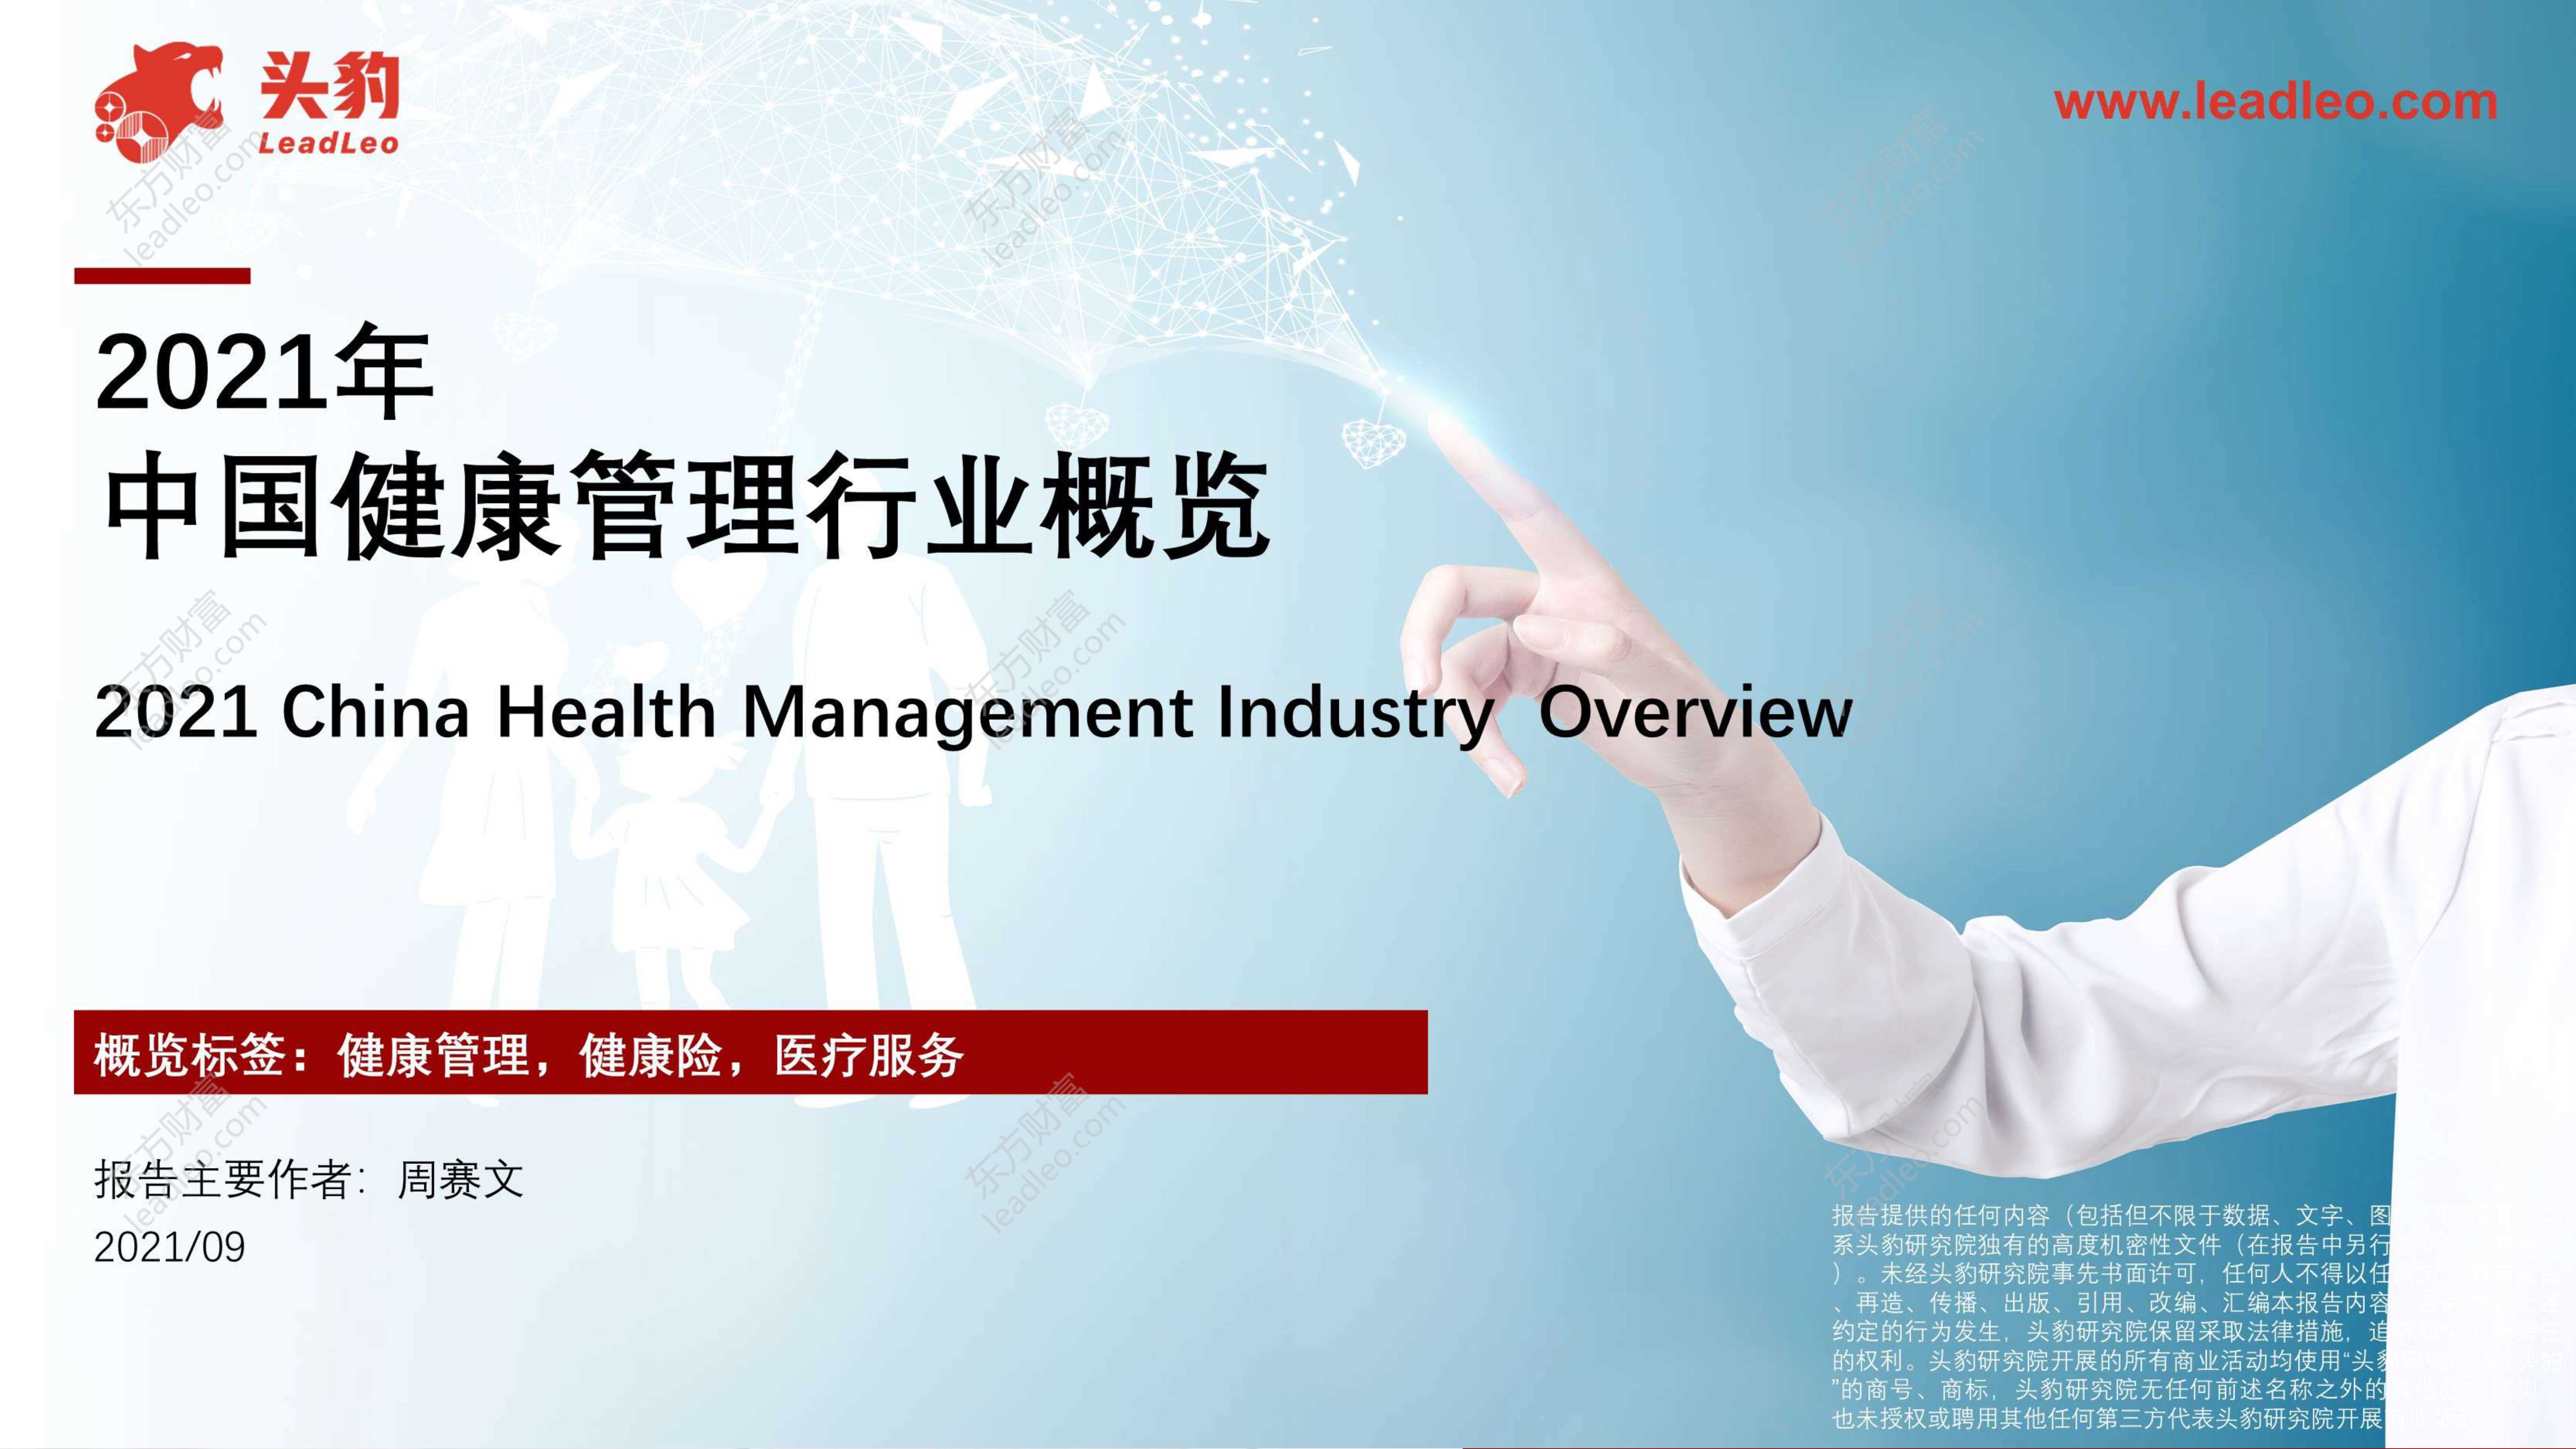 头豹研究院-2021年中国健康管理行业概览-2021.10-37页